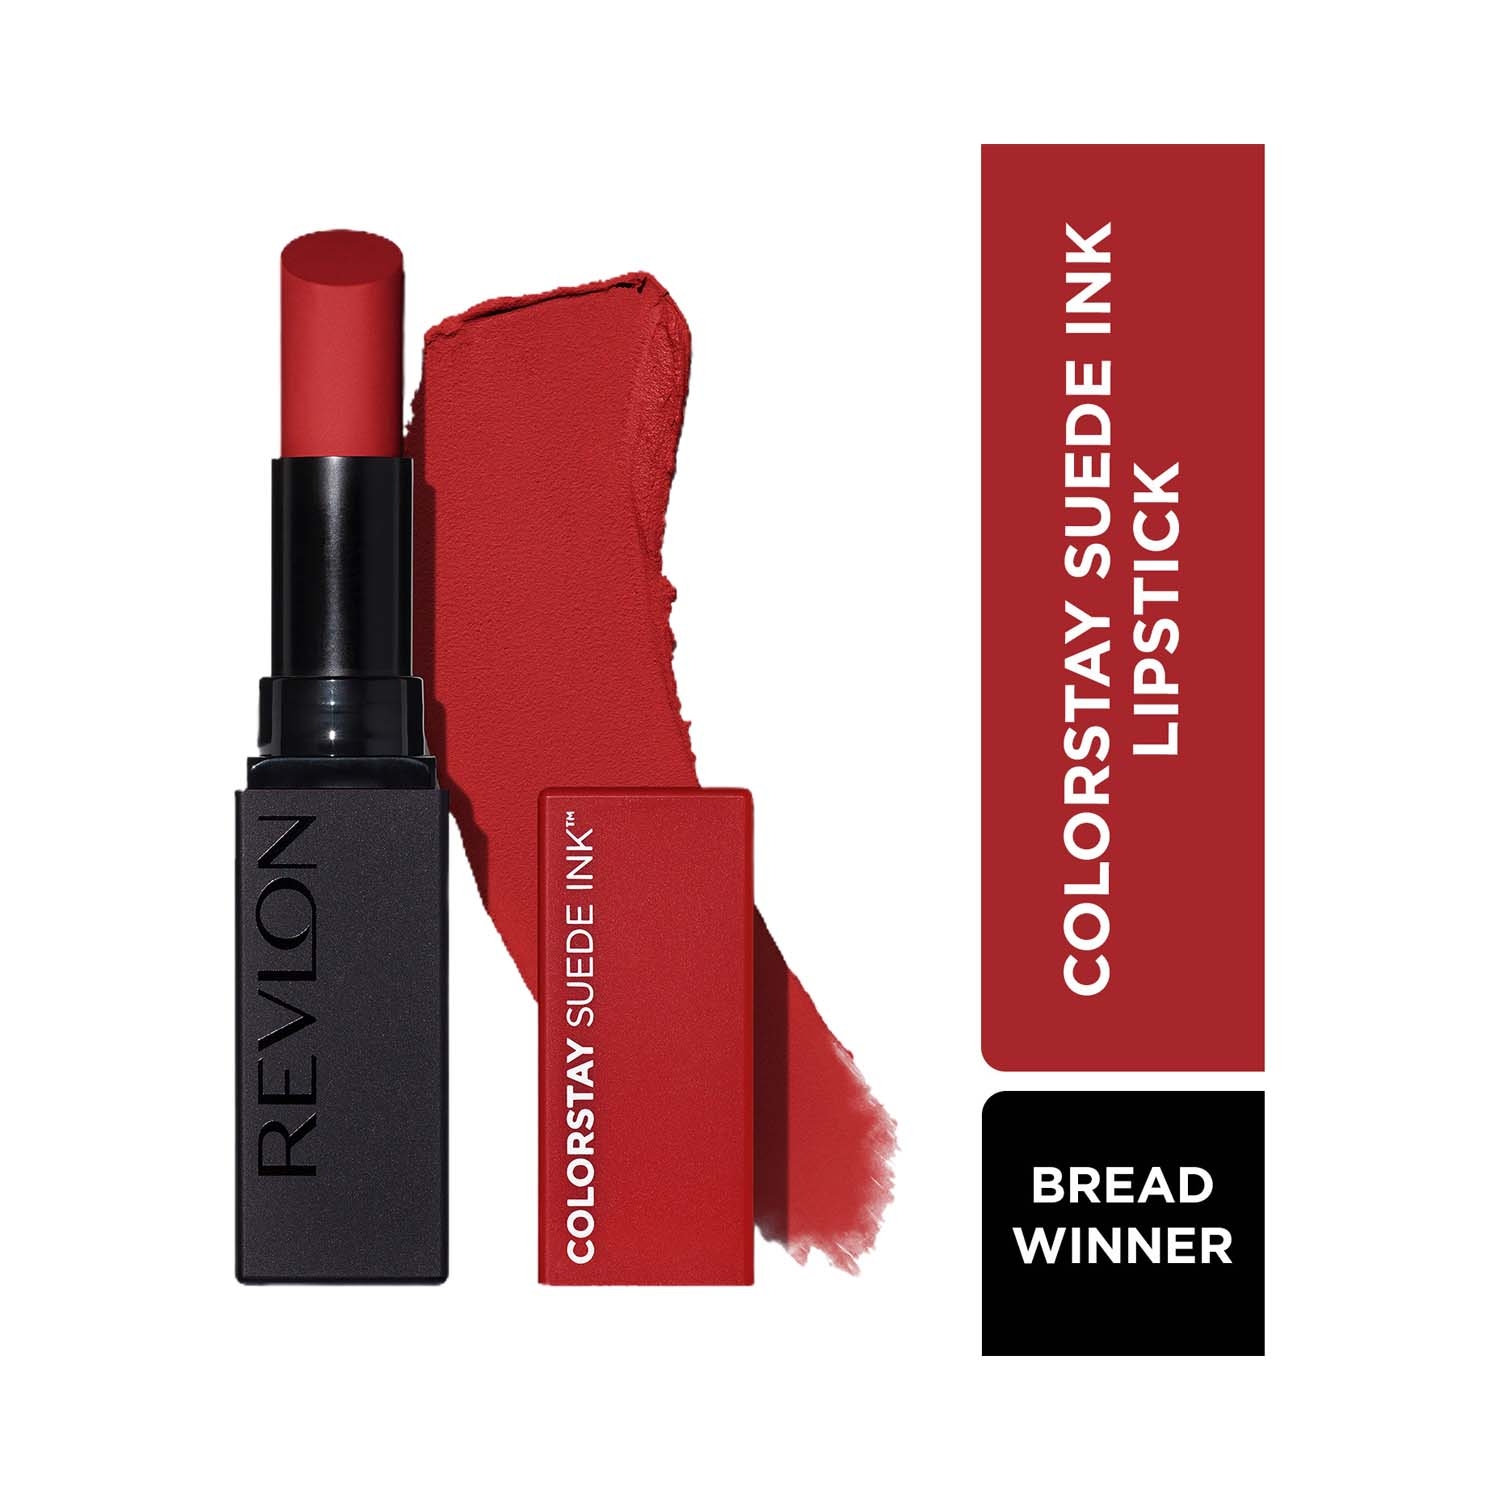 Revlon Colorstay Suede Ink Lipstick - 016 Bread Winner (2.5g)